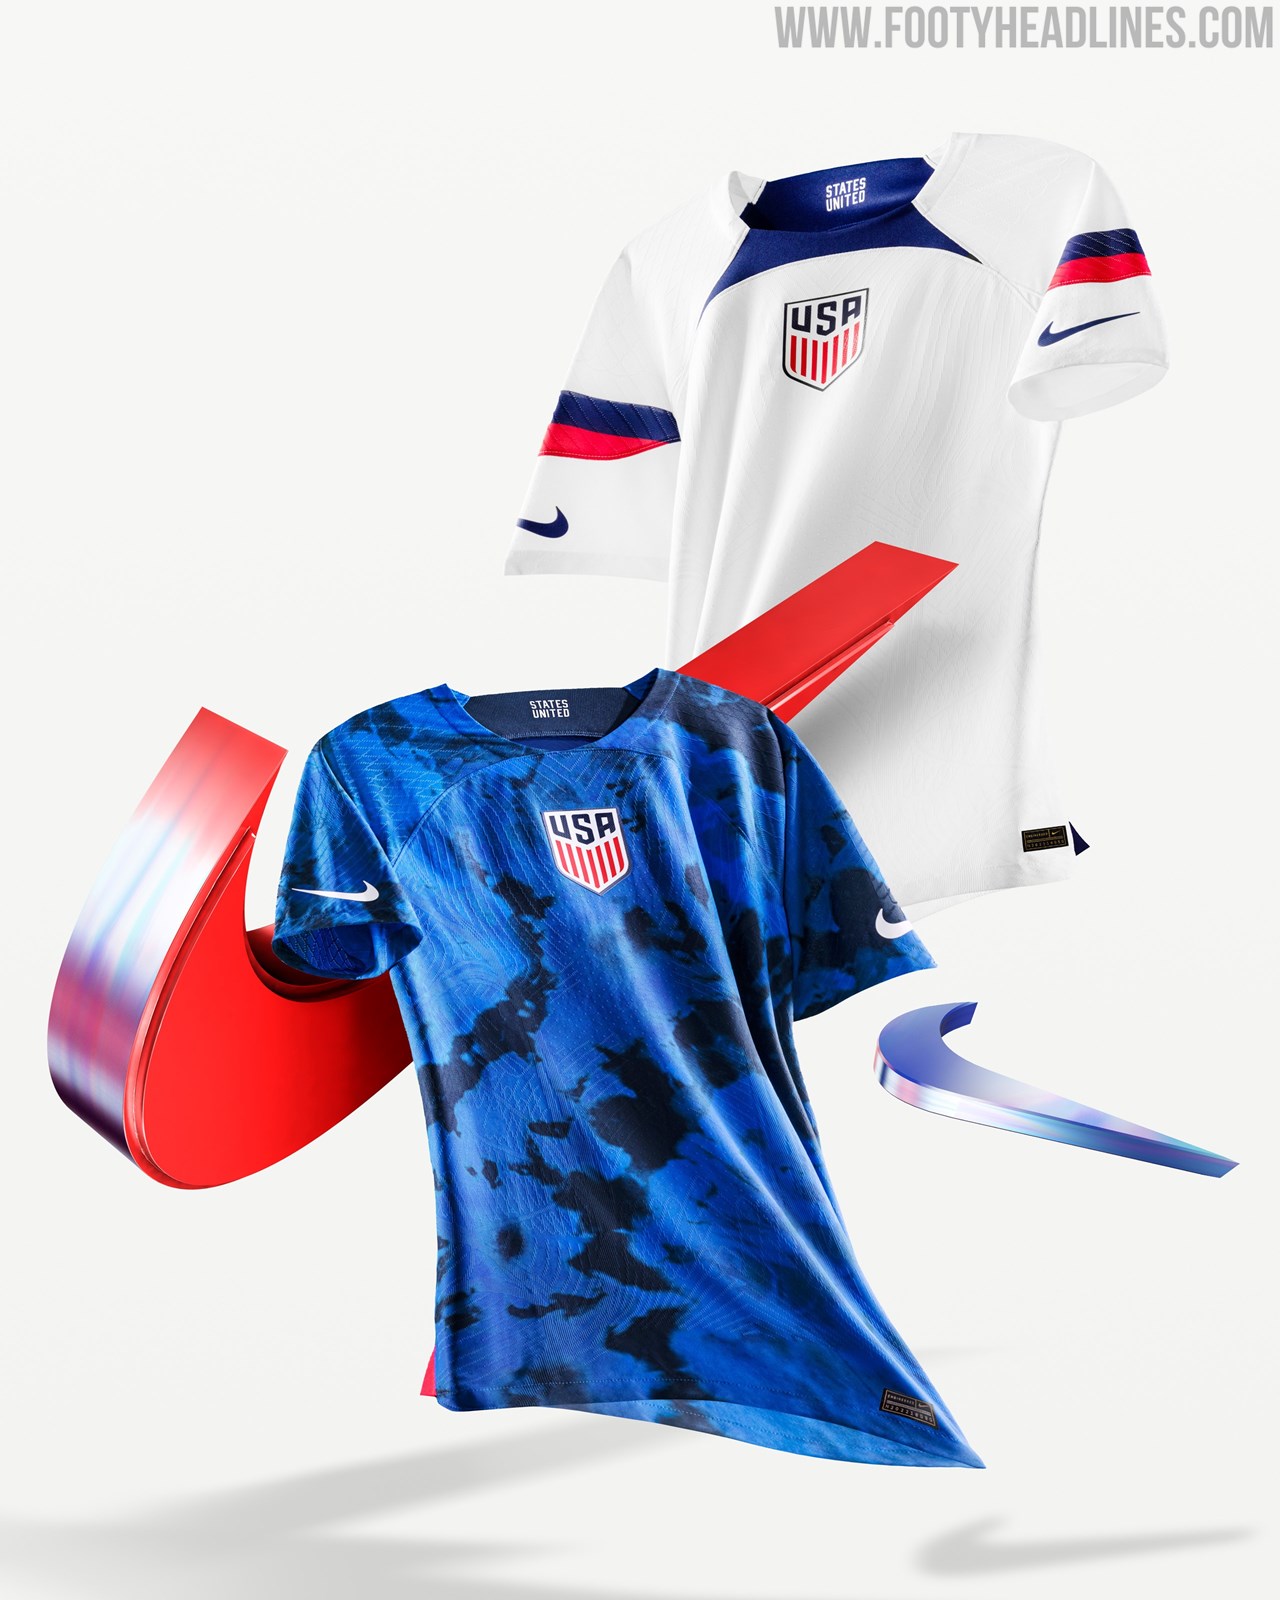 medeklinker muis of rat ik ben gelukkig USA 2022 World Cup Home & Away Kits Released - Footy Headlines